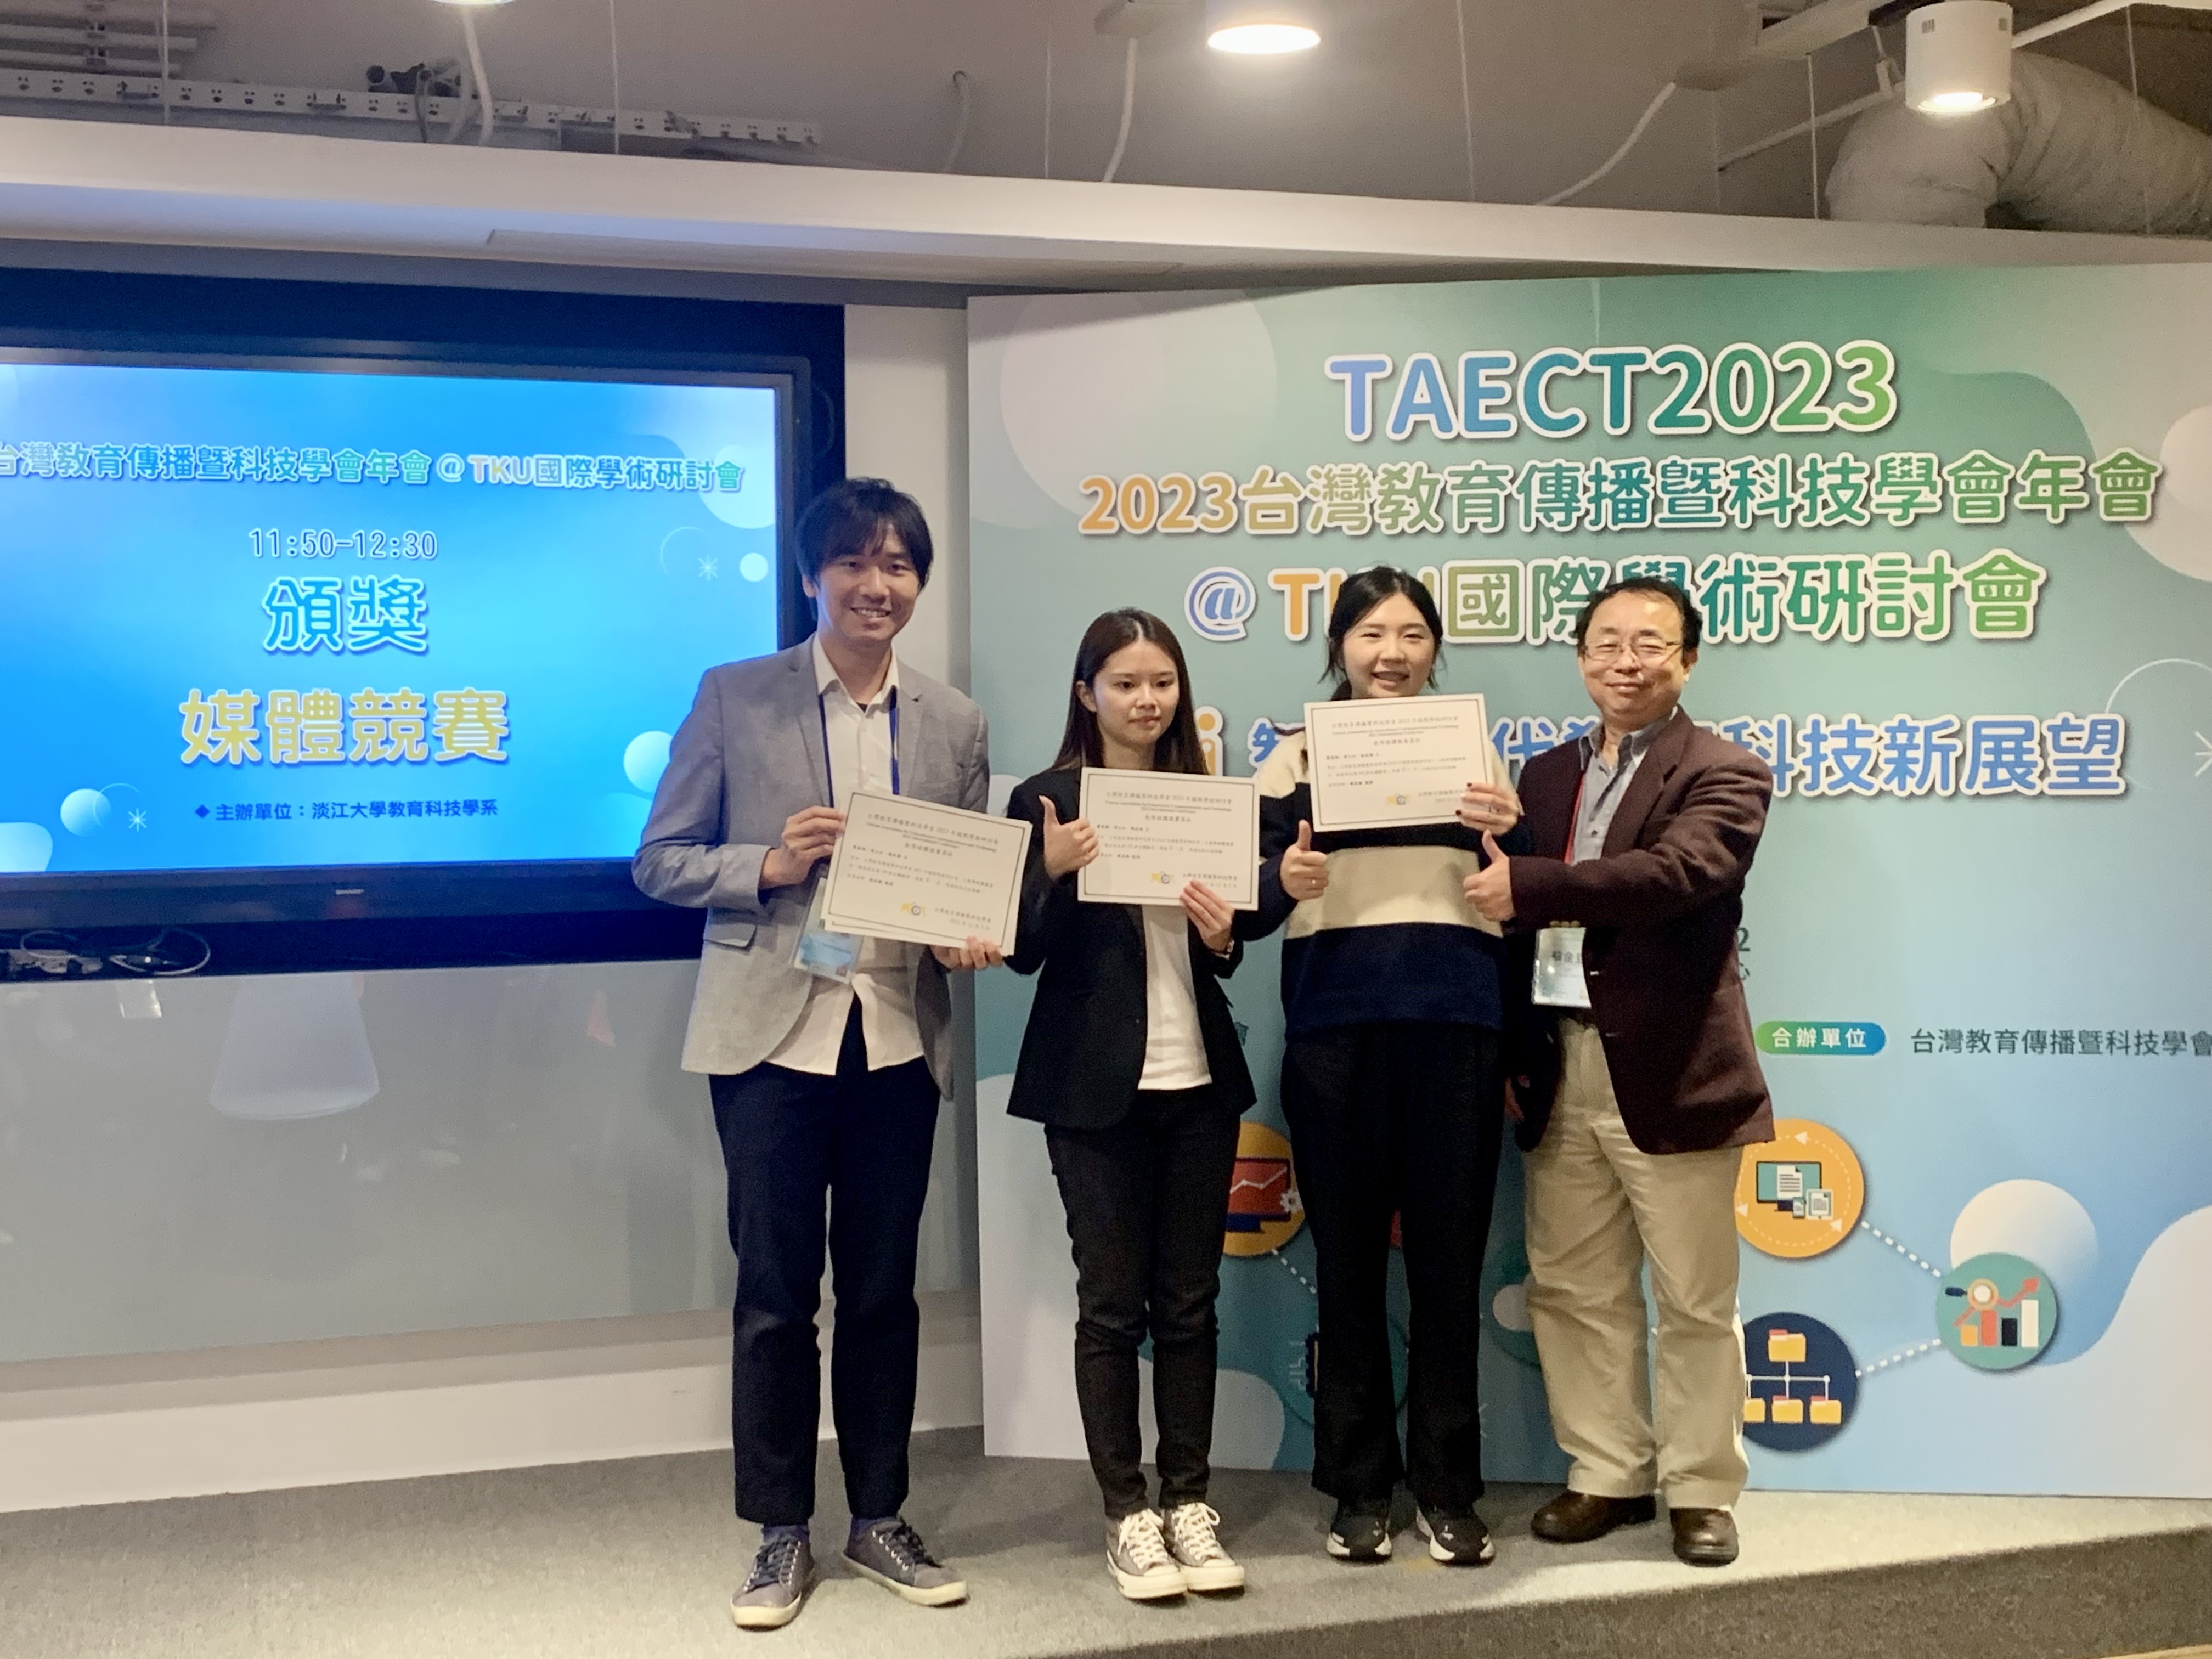 图为亚大商应系陈政焕老师(左1)、廖葵雅(左2)、周士玟同学(左3)，获颁数码媒体实作竞赛数码媒体实作竞赛第1名。